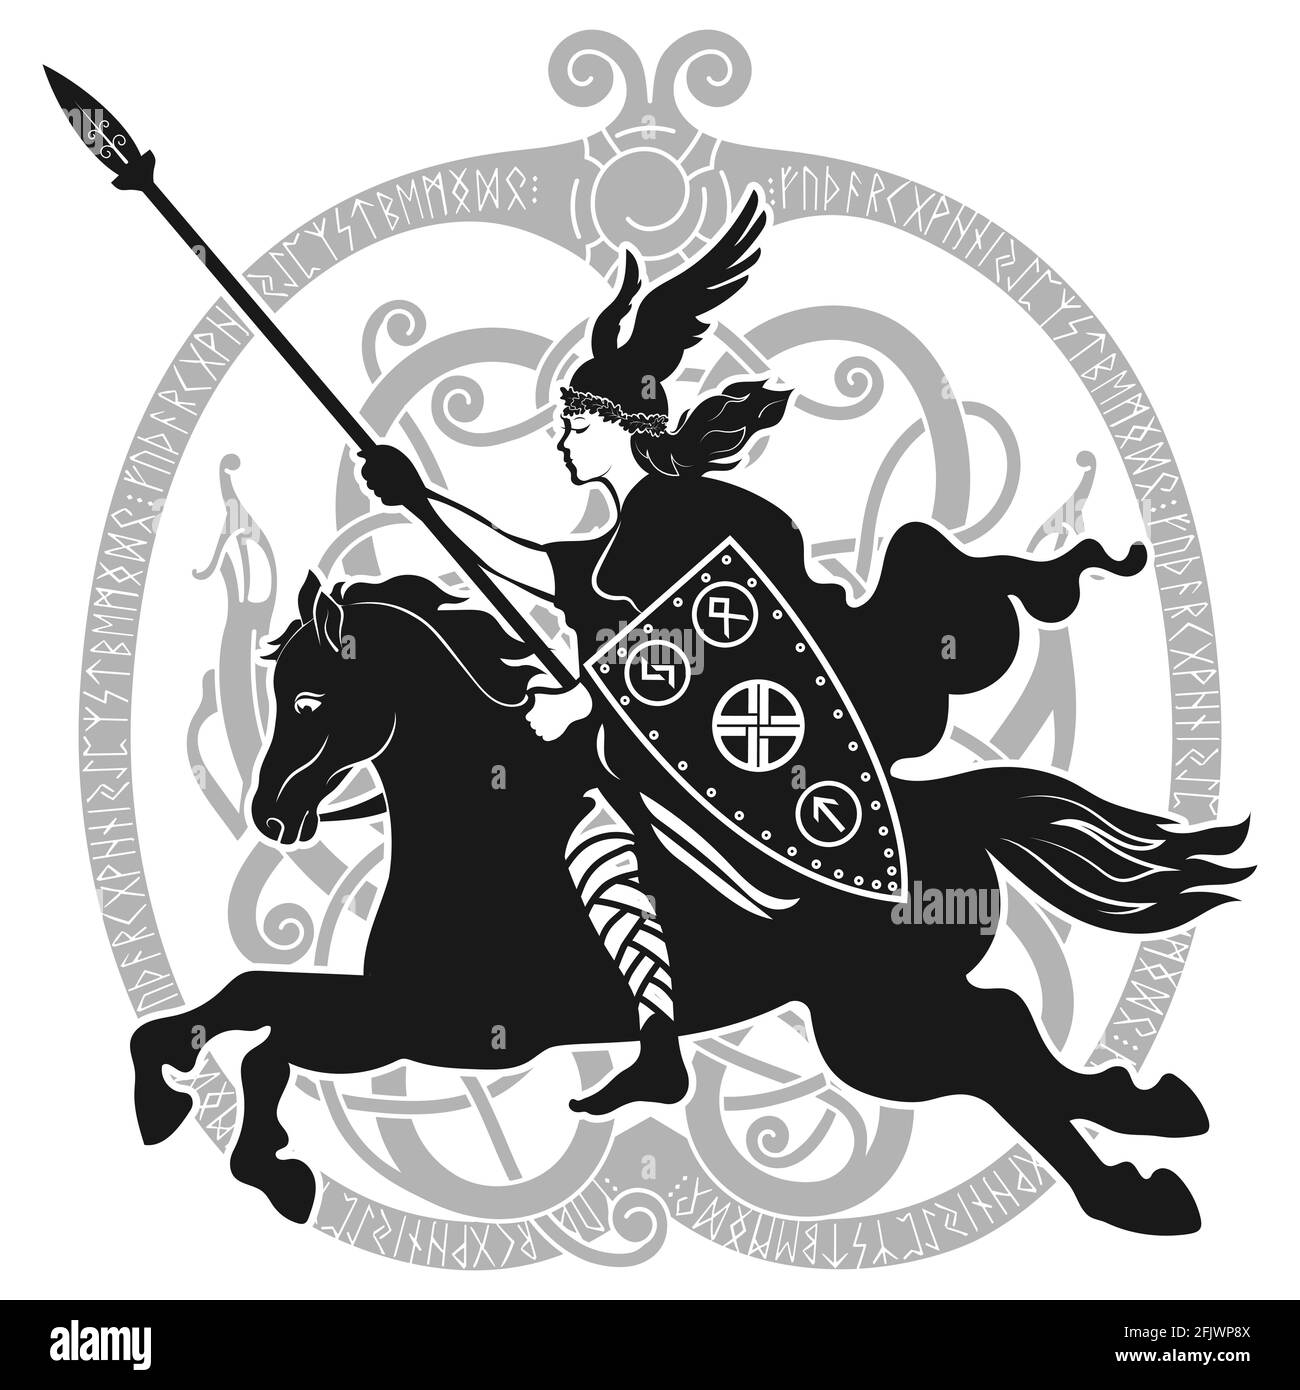 Design vichingo. Valkyrie su un cavallo da guerra, illustrazione della mitologia scandinava Illustrazione Vettoriale